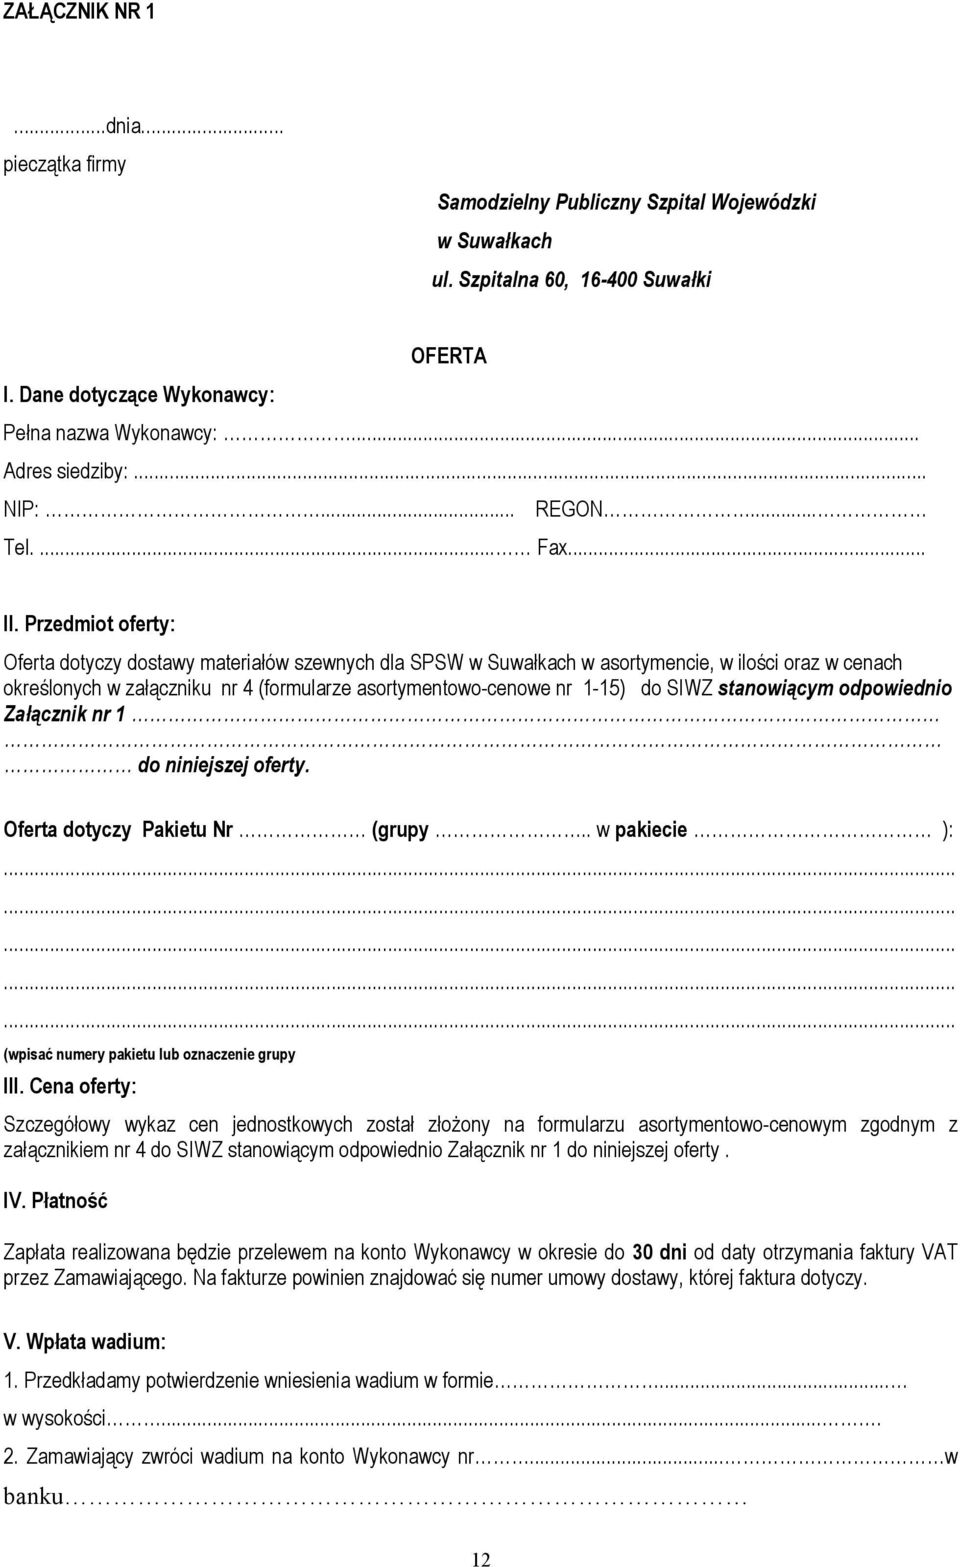 Przedmiot oferty: Oferta dotyczy dostawy materiałów szewnych dla SPSW w Suwałkach w asortymencie, w ilości oraz w cenach określonych w załączniku nr 4 (formularze asortymentowo-cenowe nr 1-15) do